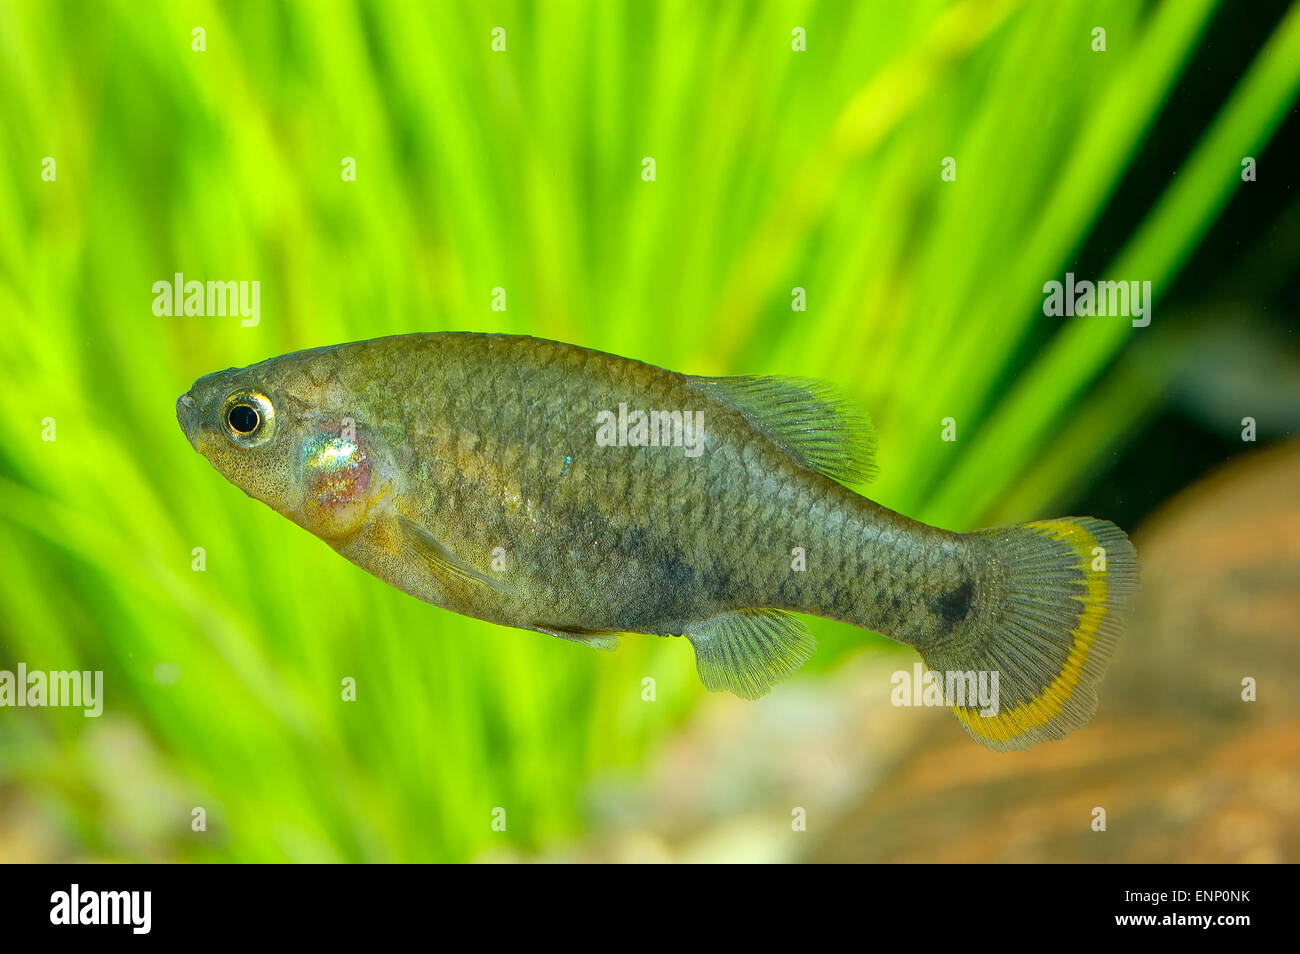 Nice aquarium fish from genus Goodea. Stock Photo